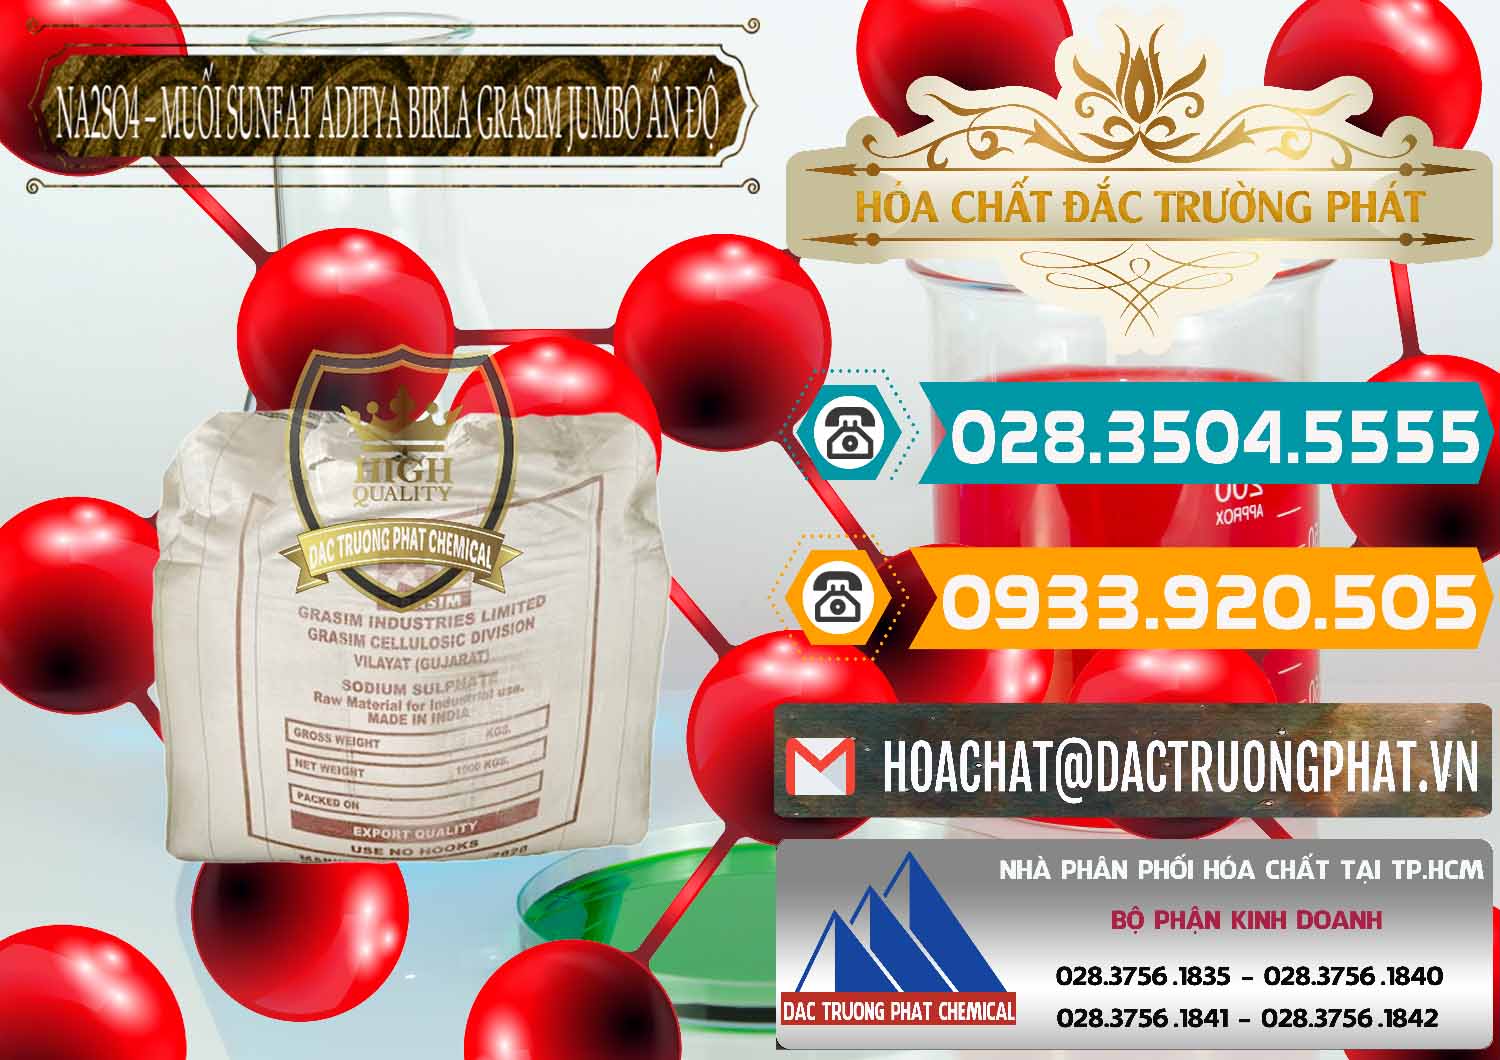 Đơn vị cung cấp & bán Sodium Sulphate - Muối Sunfat Na2SO4 Jumbo Bành Aditya Birla Grasim Ấn Độ India - 0357 - Cty cung cấp - nhập khẩu hóa chất tại TP.HCM - congtyhoachat.vn